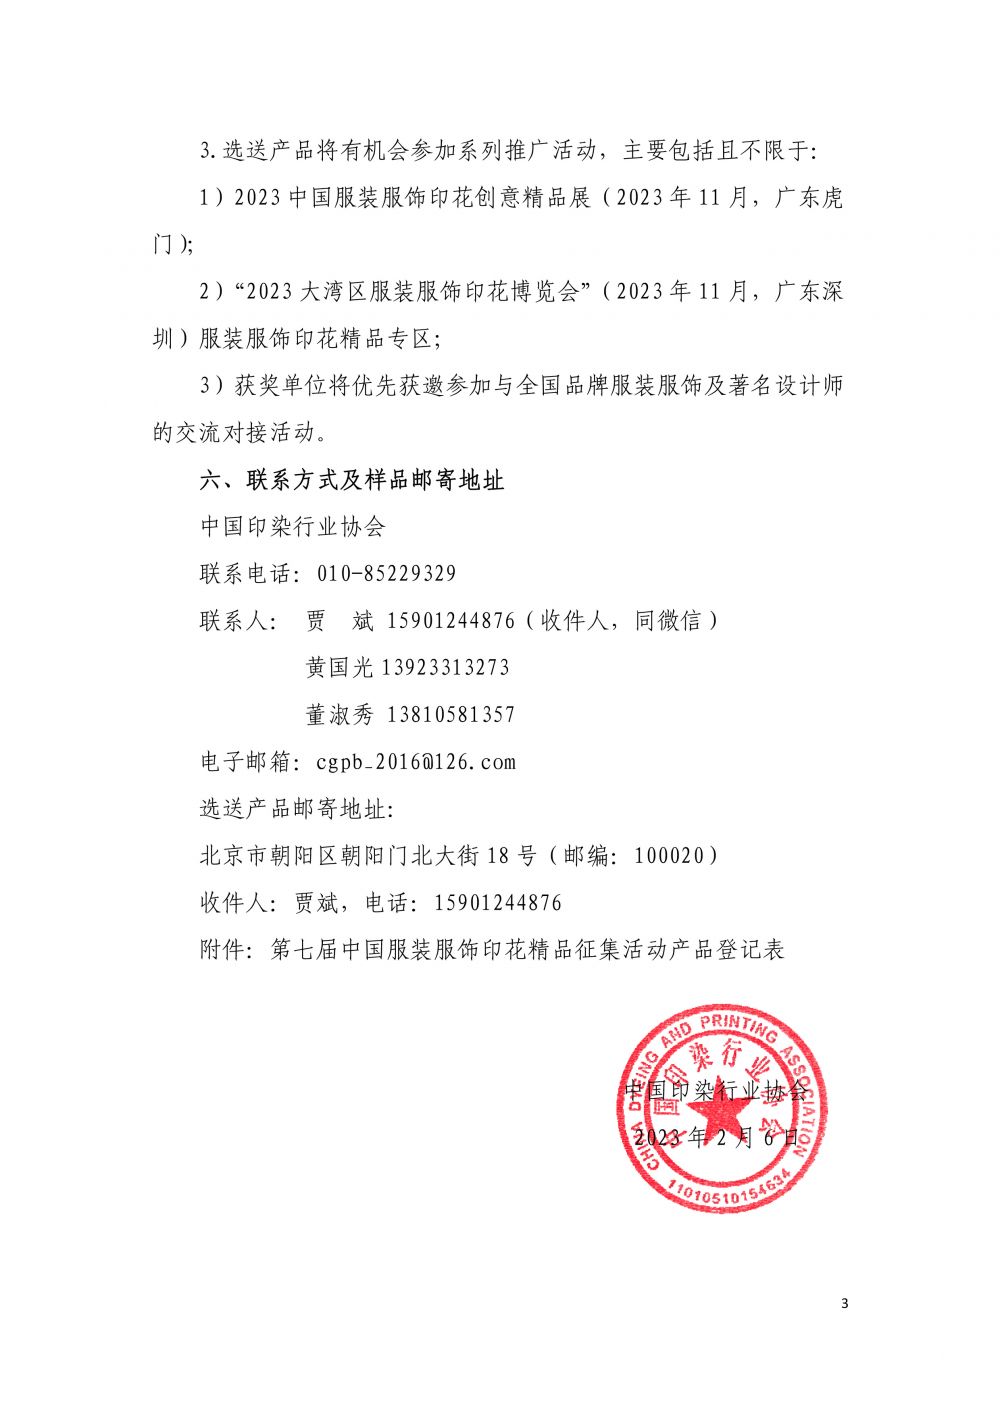 2023--沙巴体育征集第七届“中国服装服饰印花精品”的通知-3.jpg